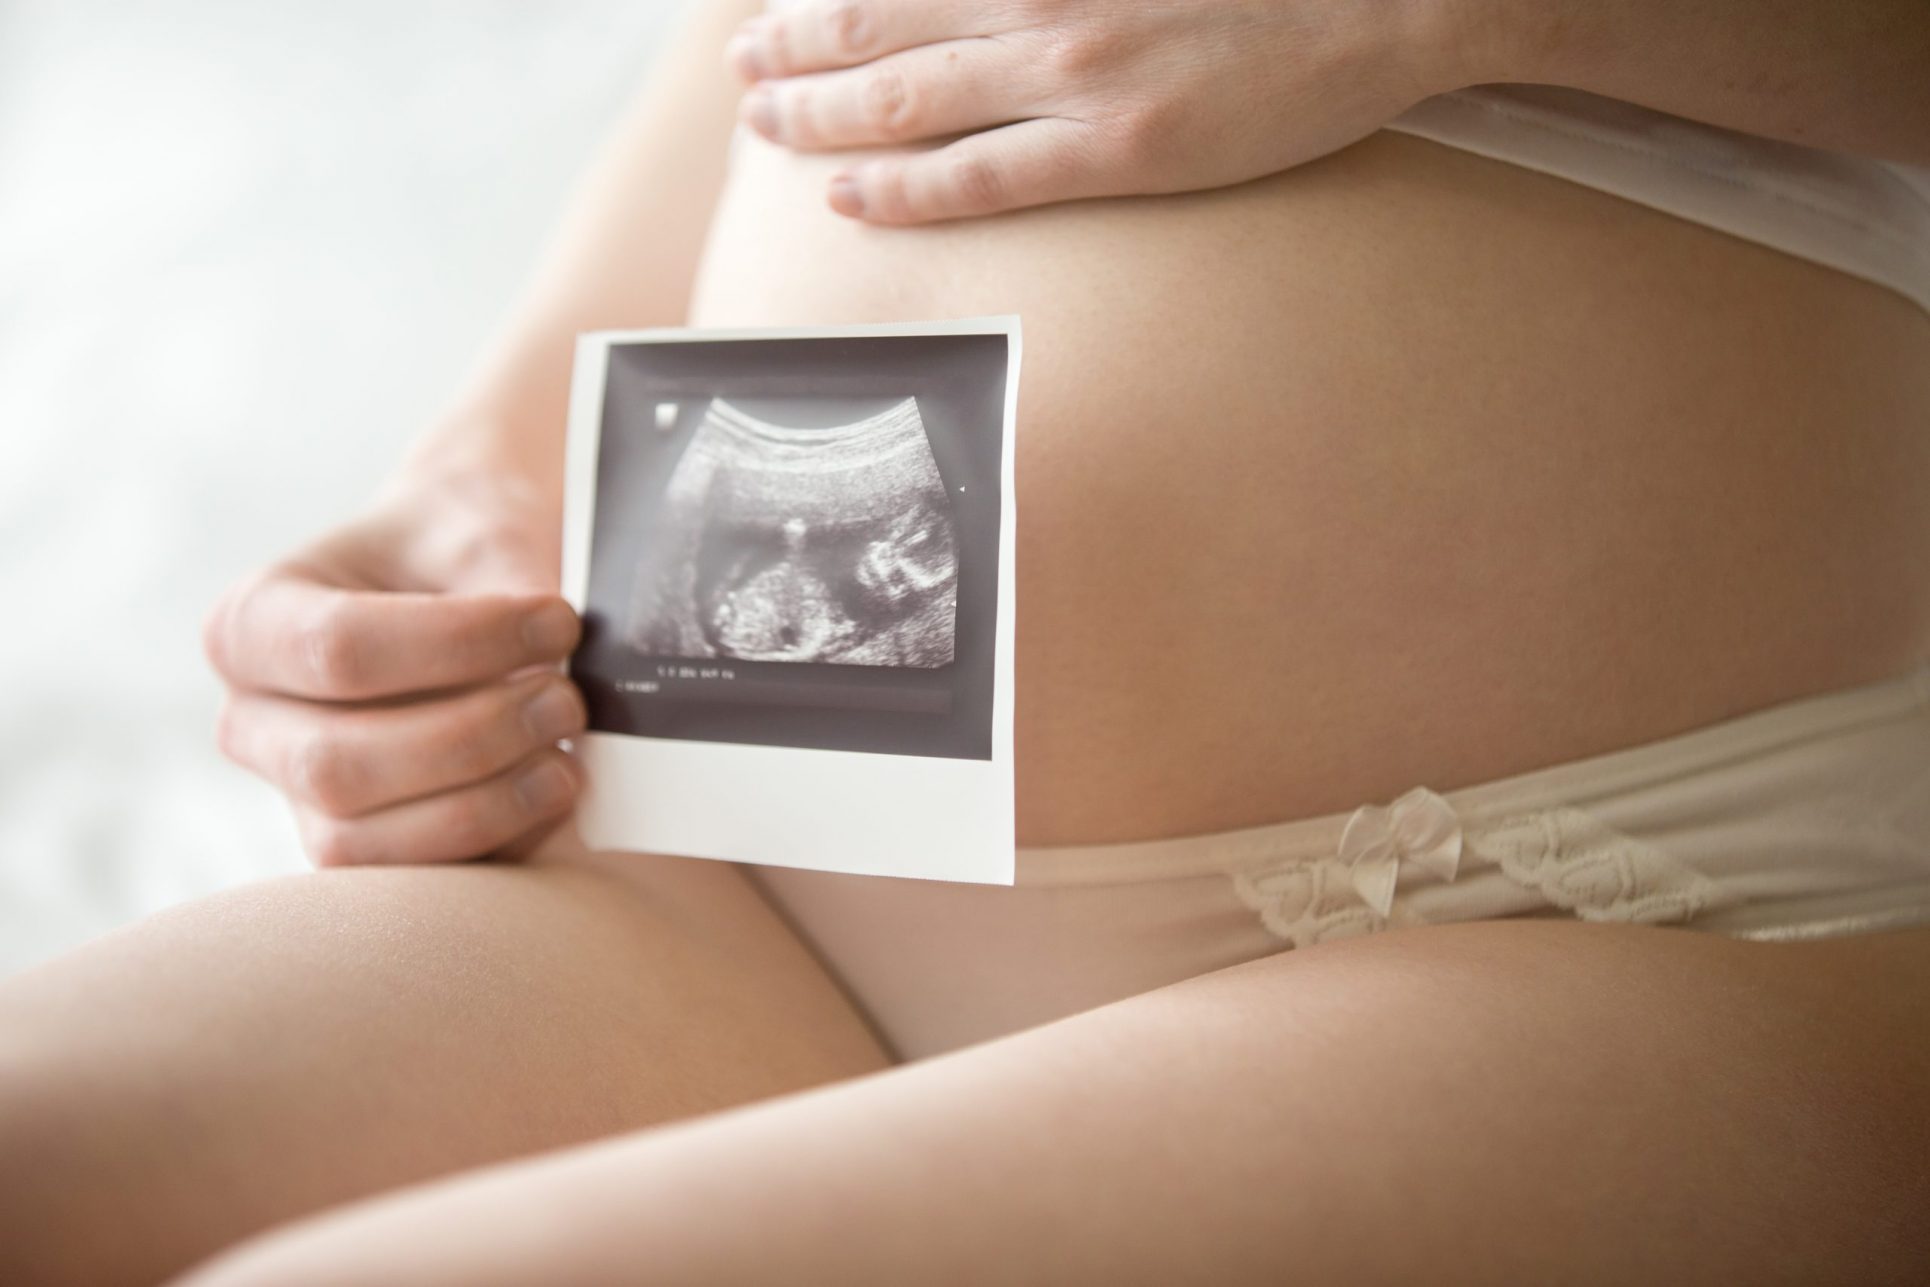 Importancia del control prenatal: cada dos minutos muere una mujer en el mundo por problemas en embarazo o parto